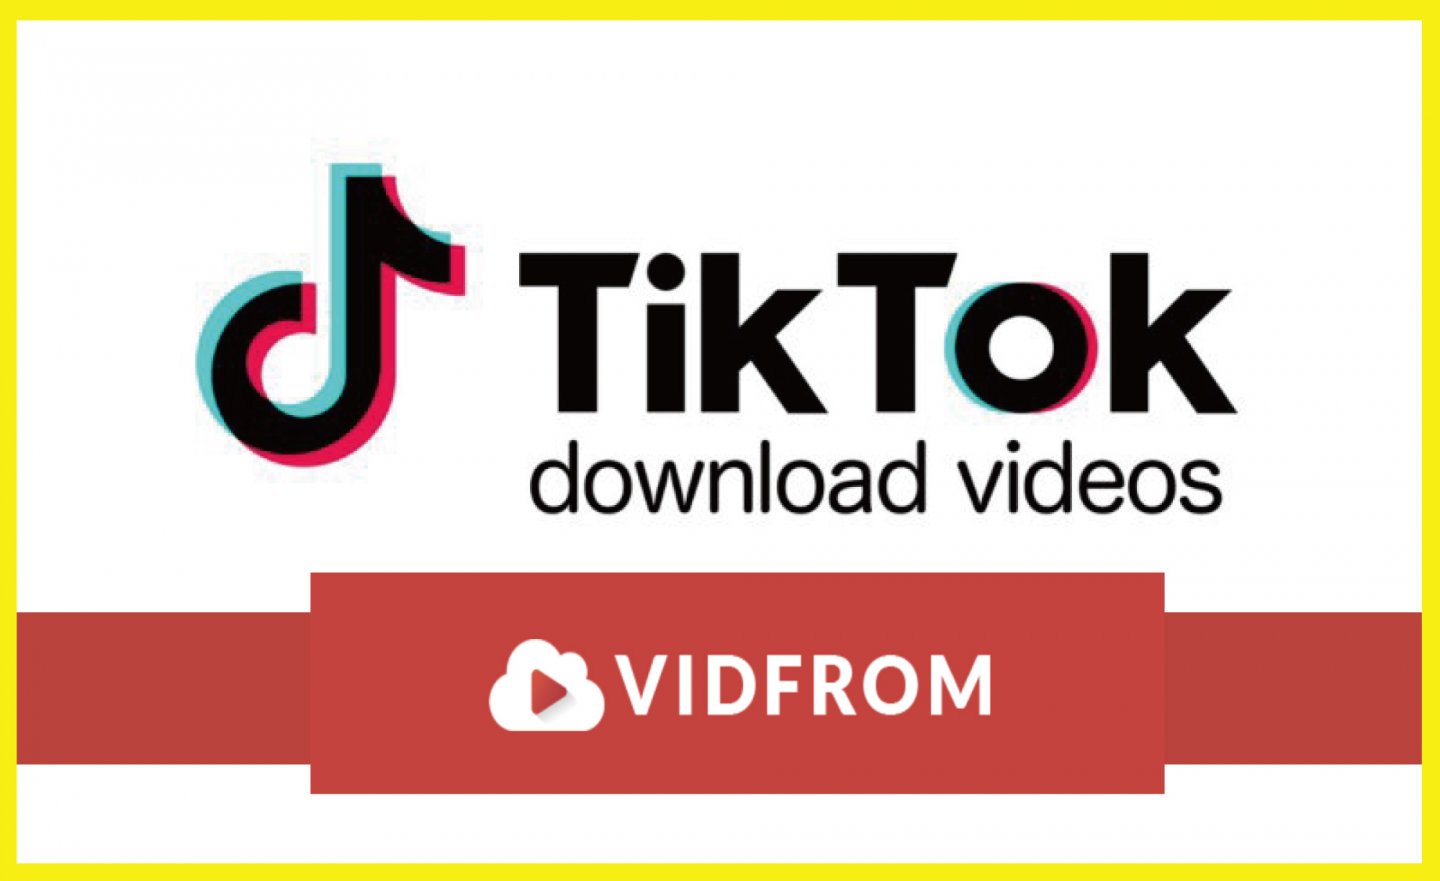 【免費】VIDFROM TikTok Downloader 只要 3 步驟，立即下載「沒有浮水印」的抖音影片